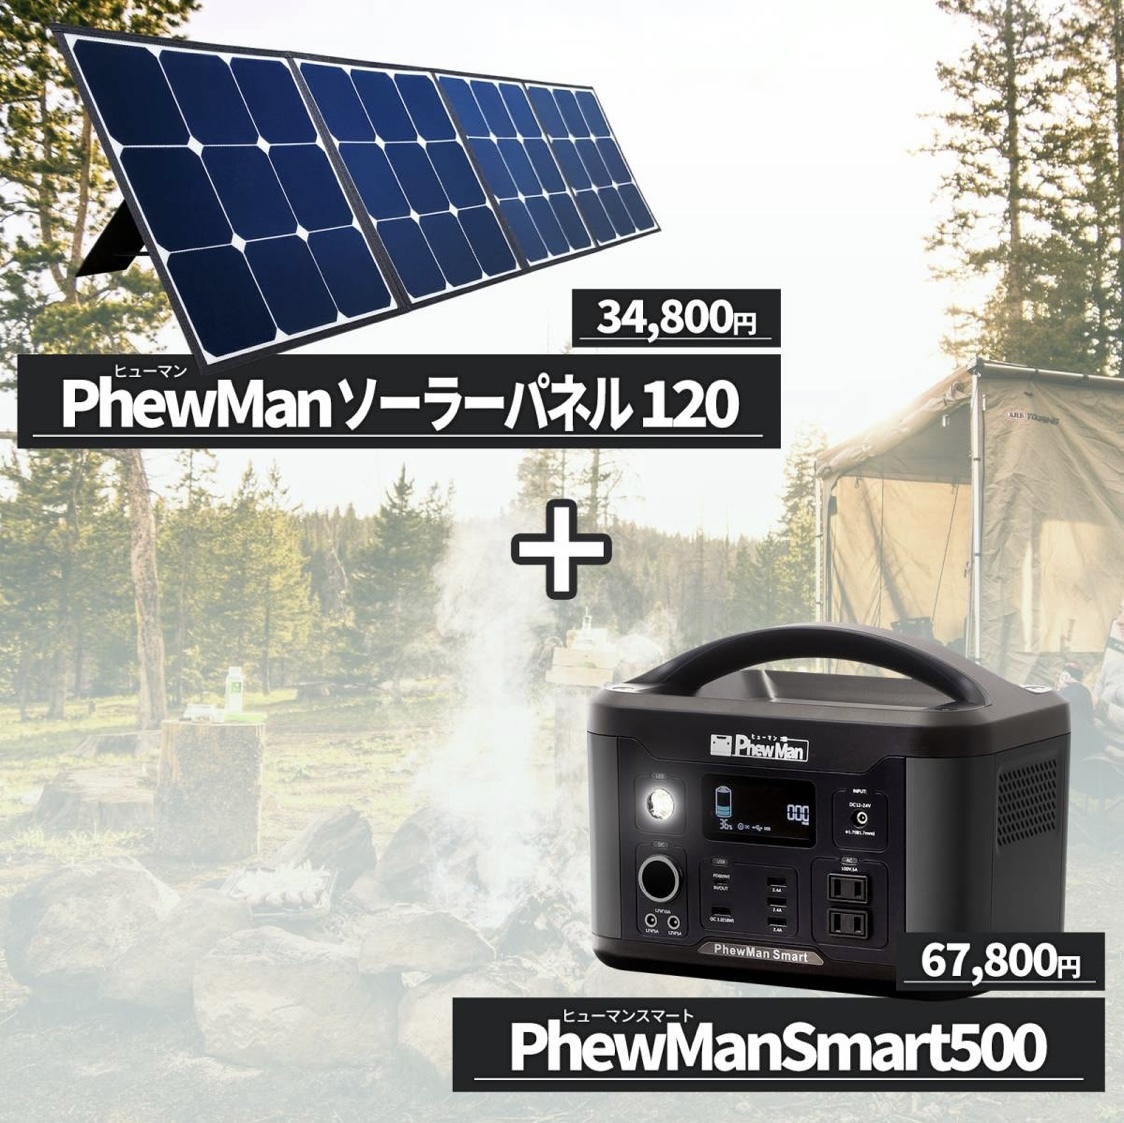 【 新品 】 PhewManSmart ポータブル電源 500W 大容量 643Wh 純正弦波 ワイヤレス充電 + ソーラーパネル 120W 変換率23.5% 防水 防災グッズ